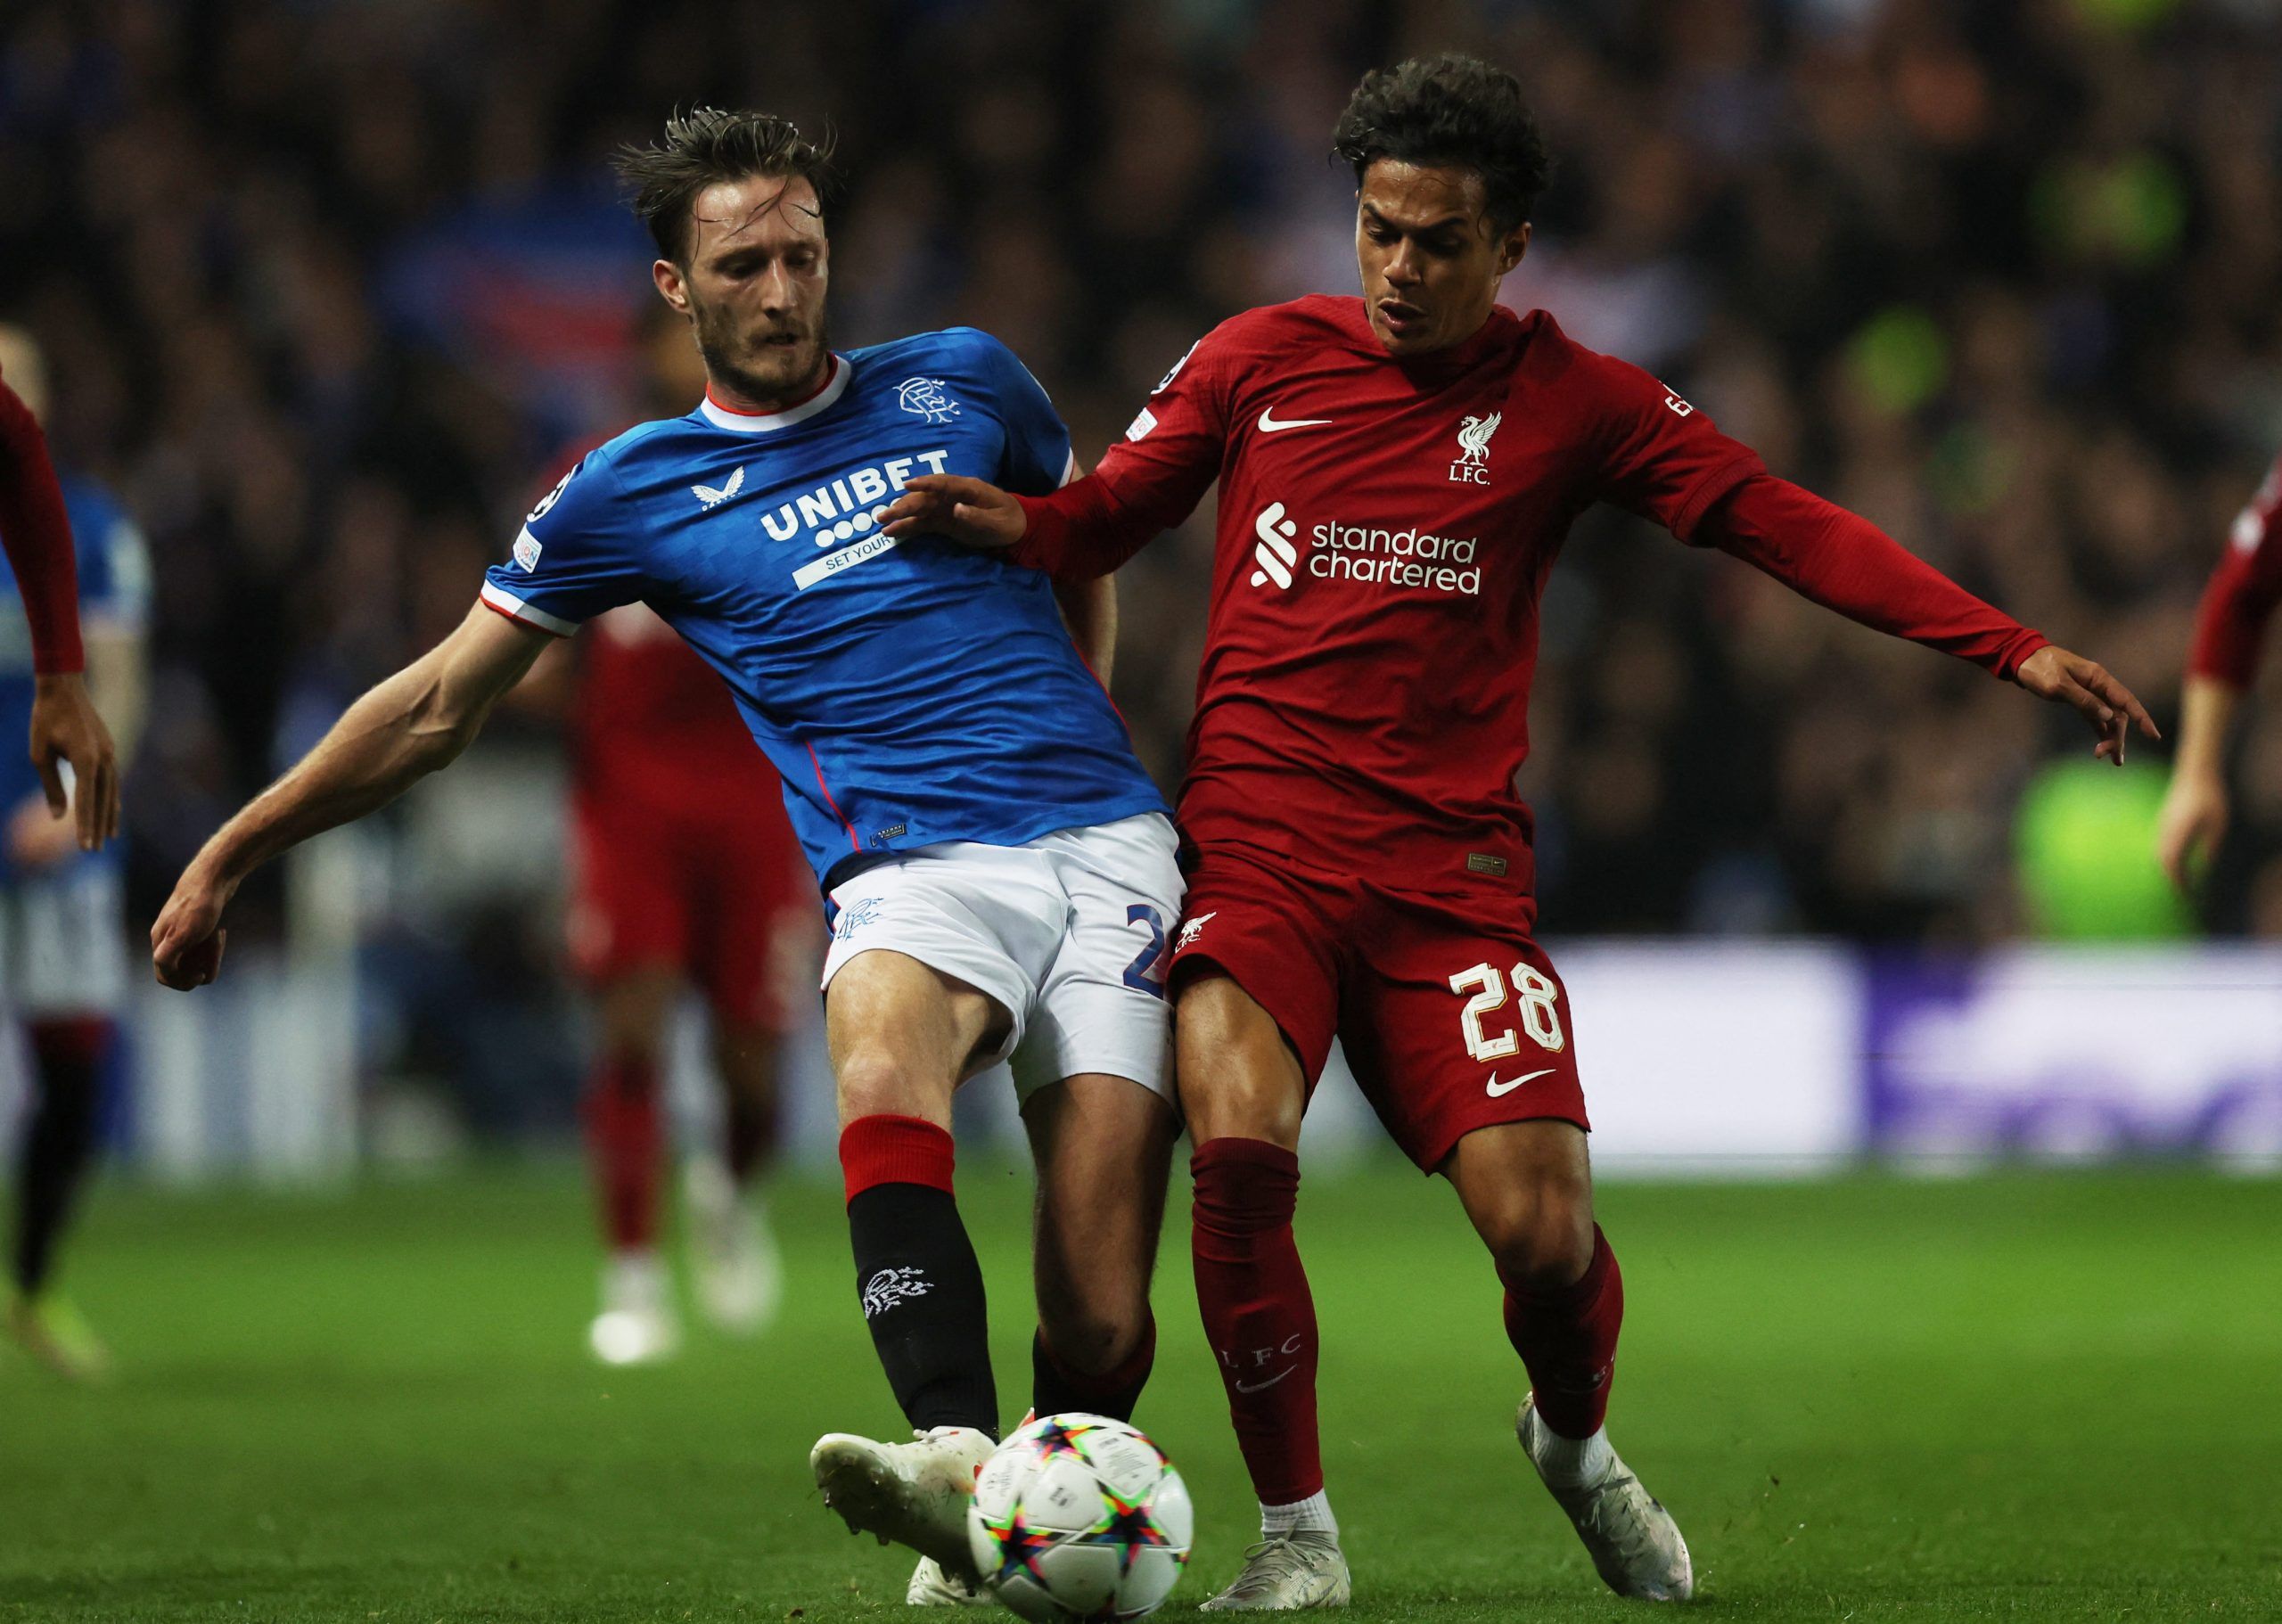 Liverpool: Fabio Carvalho could step into Diogo Jota’s role -Liverpool News